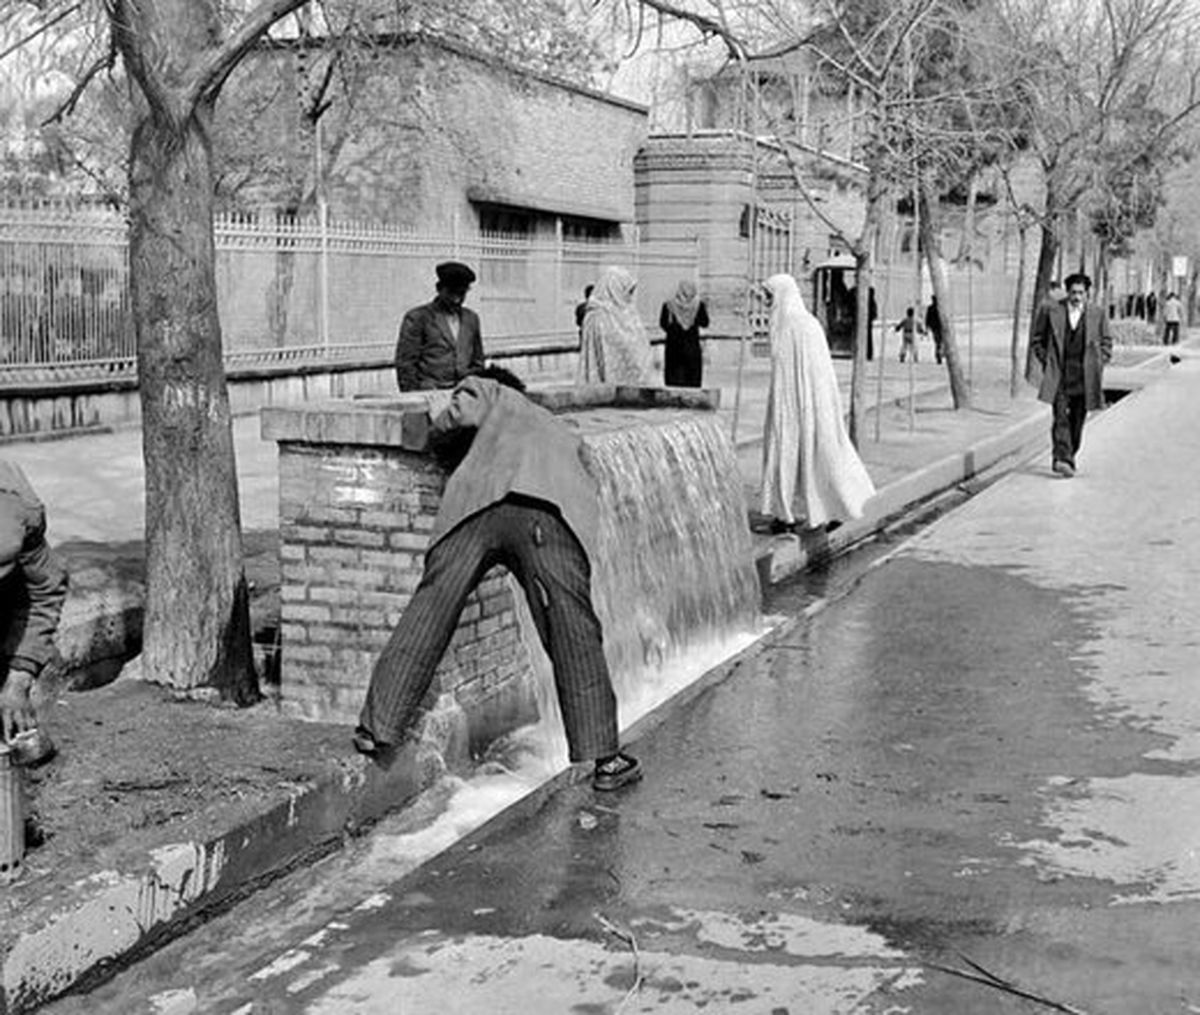 عکس | تصویر جالب از آبخوری قنات خیابان حافظ سال ۱۳۳۰